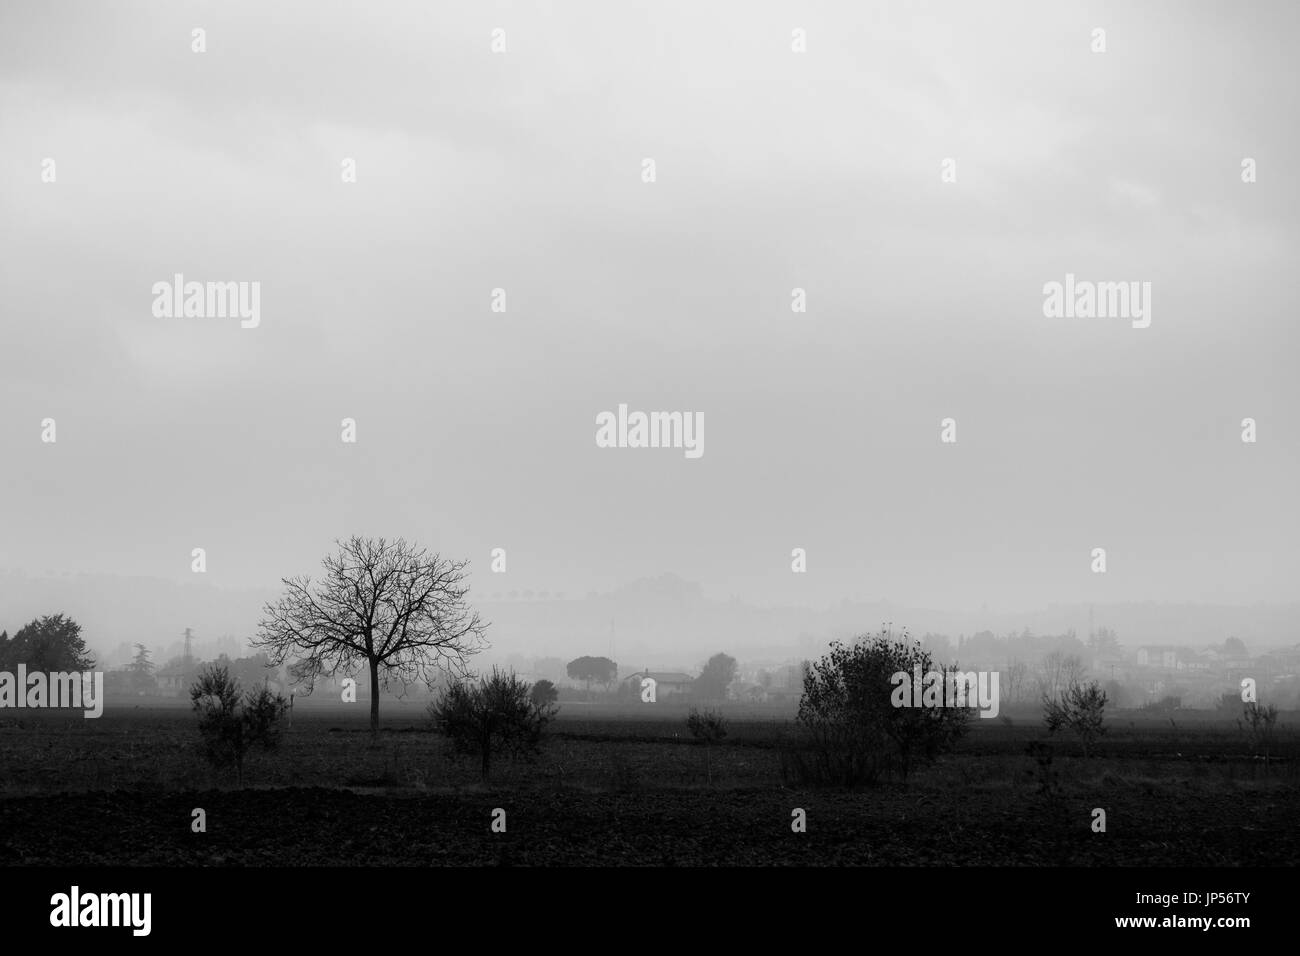 Vue d'un pays à l'automne / hiver, avec quelques arbres et des maisons dans la brume Banque D'Images